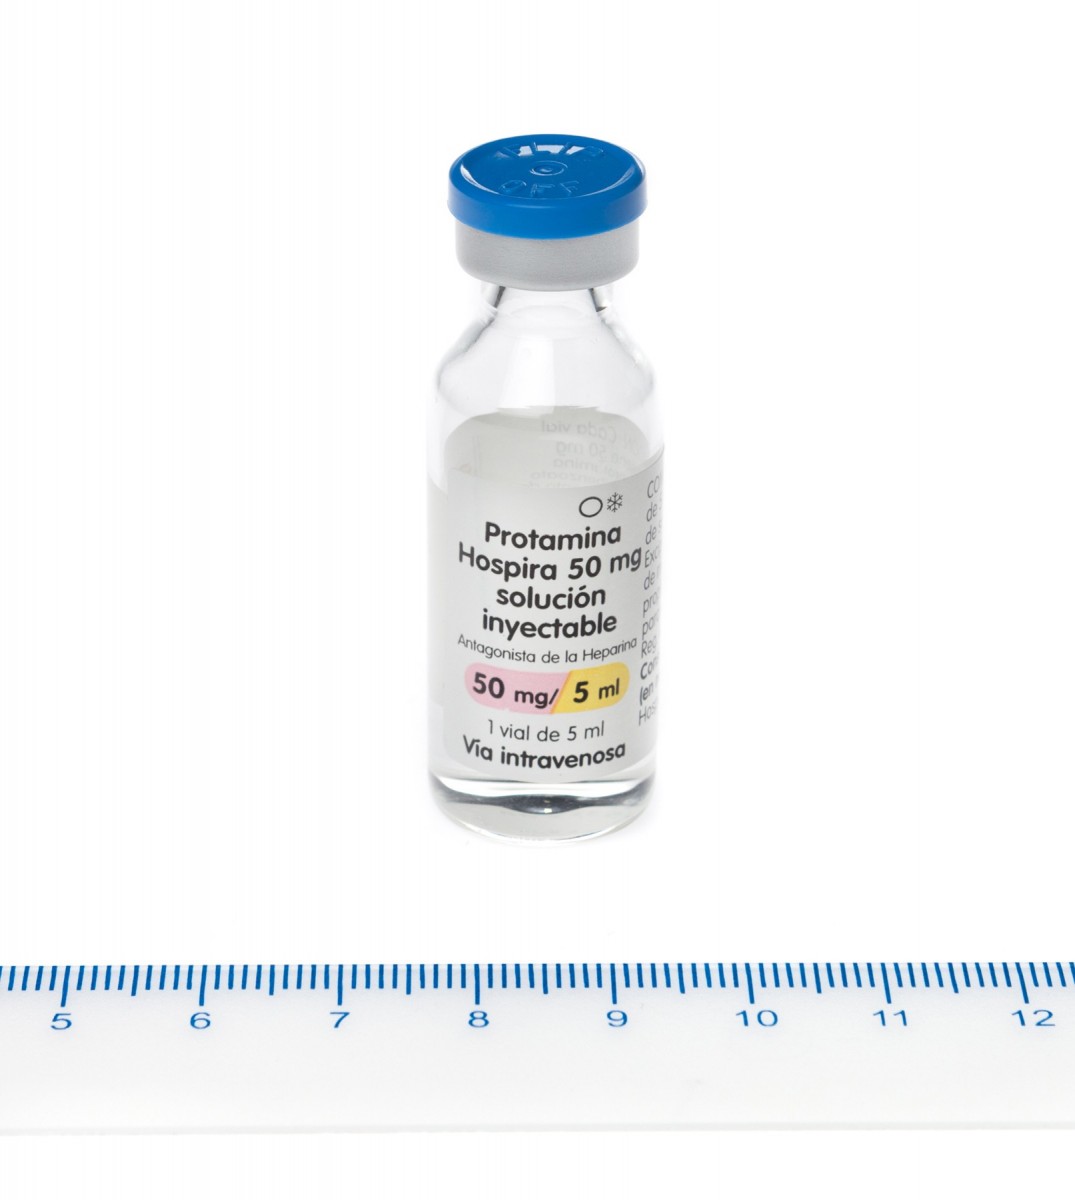 PROTAMINA HOSPIRA 10 mg/ml SOLUCION INYECTABLE , 1 vial de 5 ml fotografía de la forma farmacéutica.